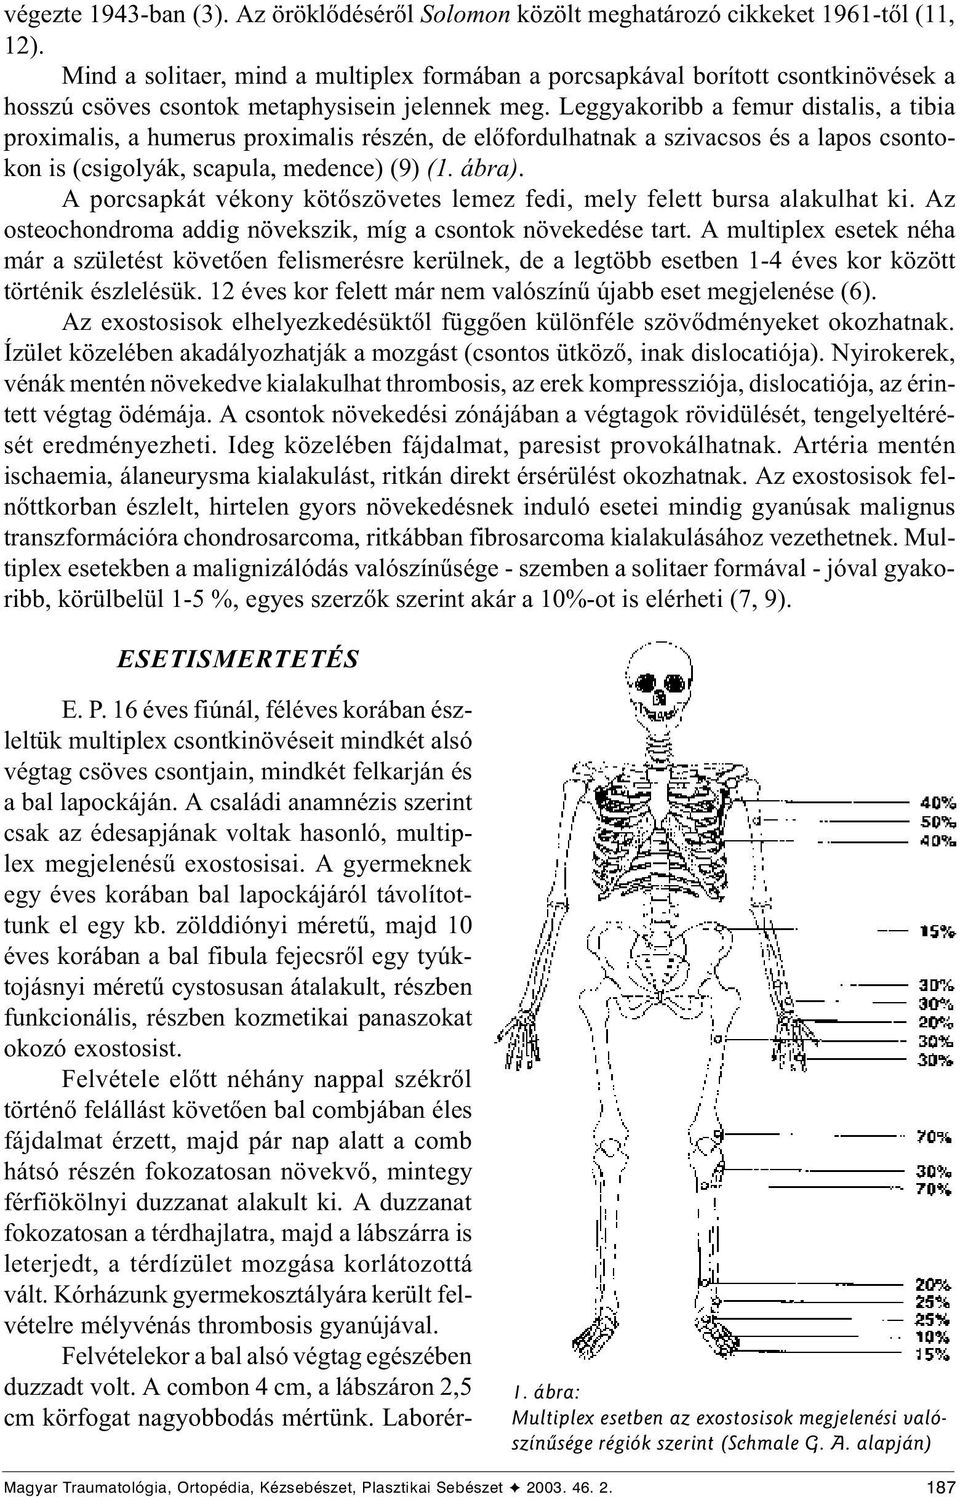 Leggyakoribb a femur distalis, a tibia proximalis, a humerus proximalis részén, de elõfordulhatnak a szivacsos és a lapos csontokon is (csigolyák, scapula, medence) (9) (1. ábra).